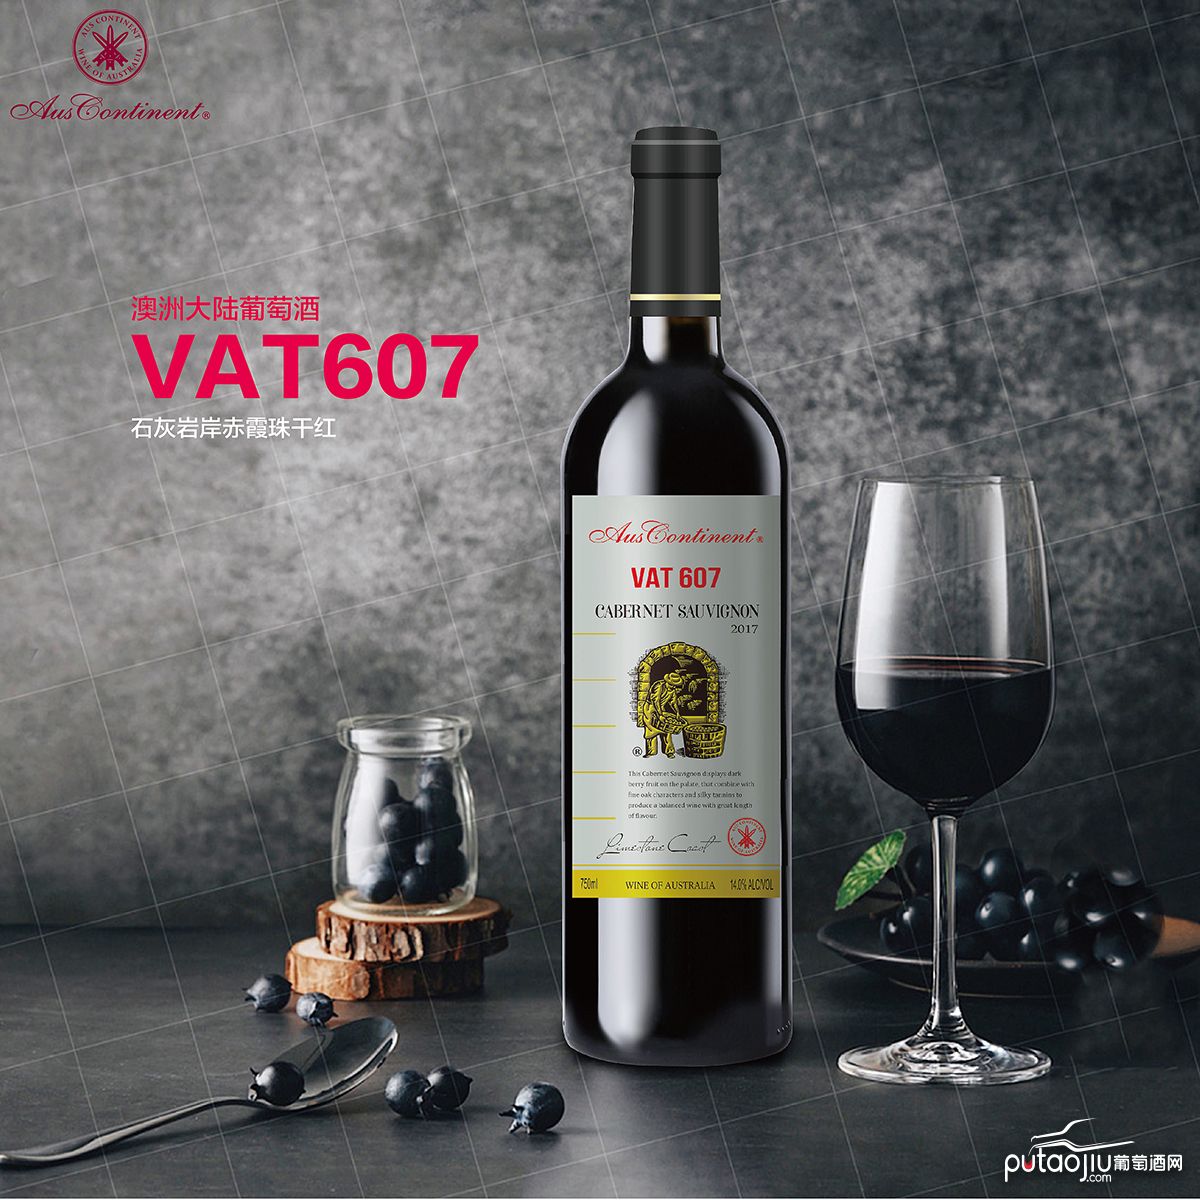 澳大利亚石灰岩海岸澳洲大陆酒庄赤霞珠VAT 607干红葡萄酒红酒